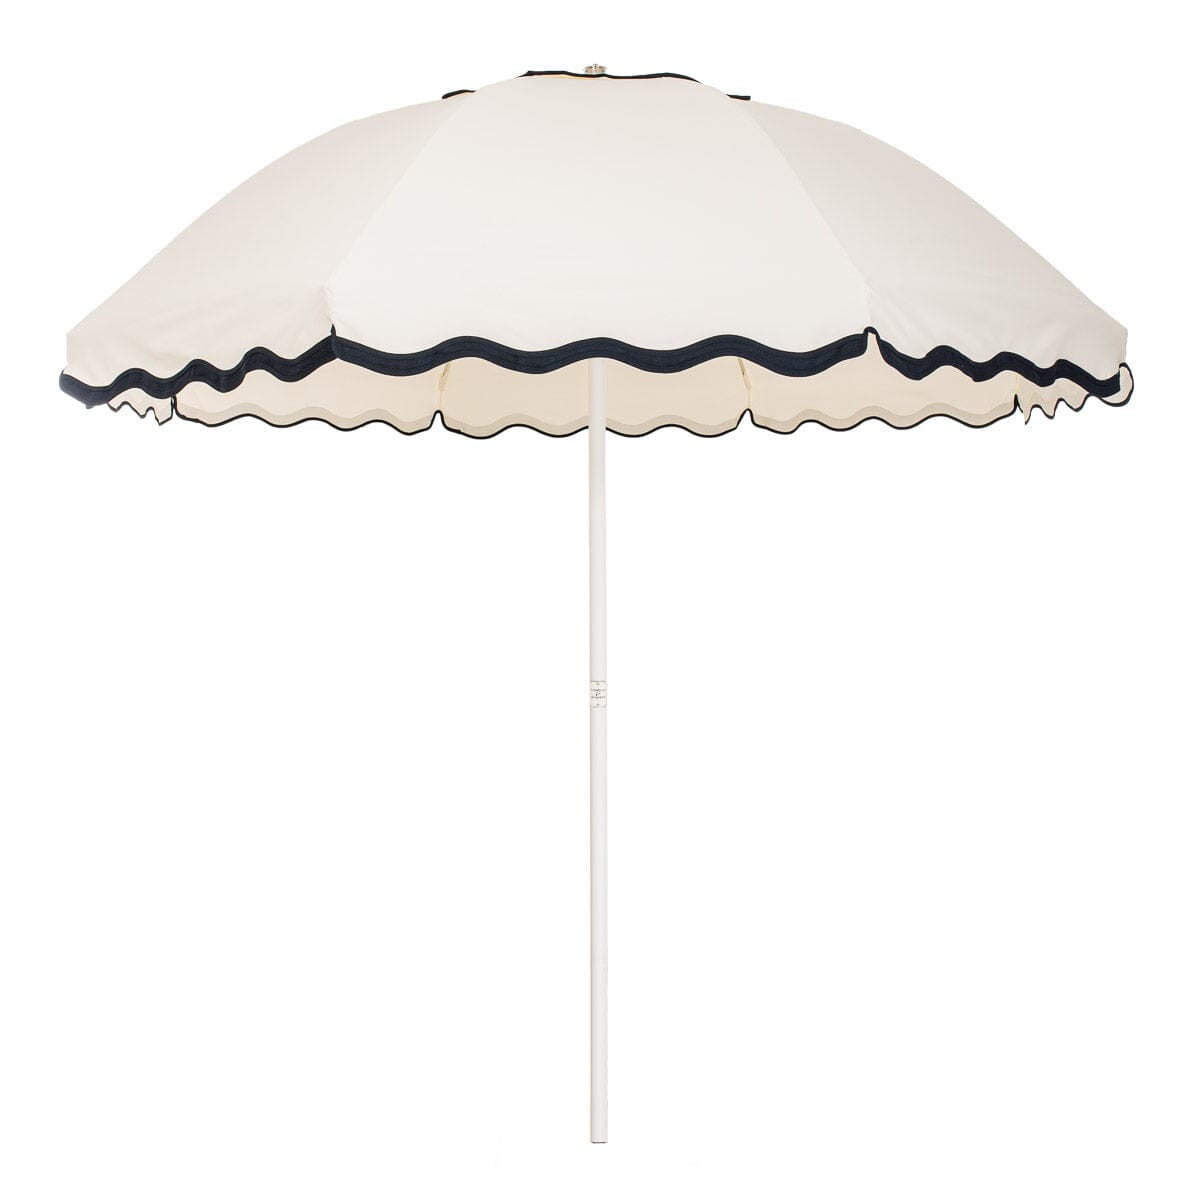 studio image of rivie white patio umbrella